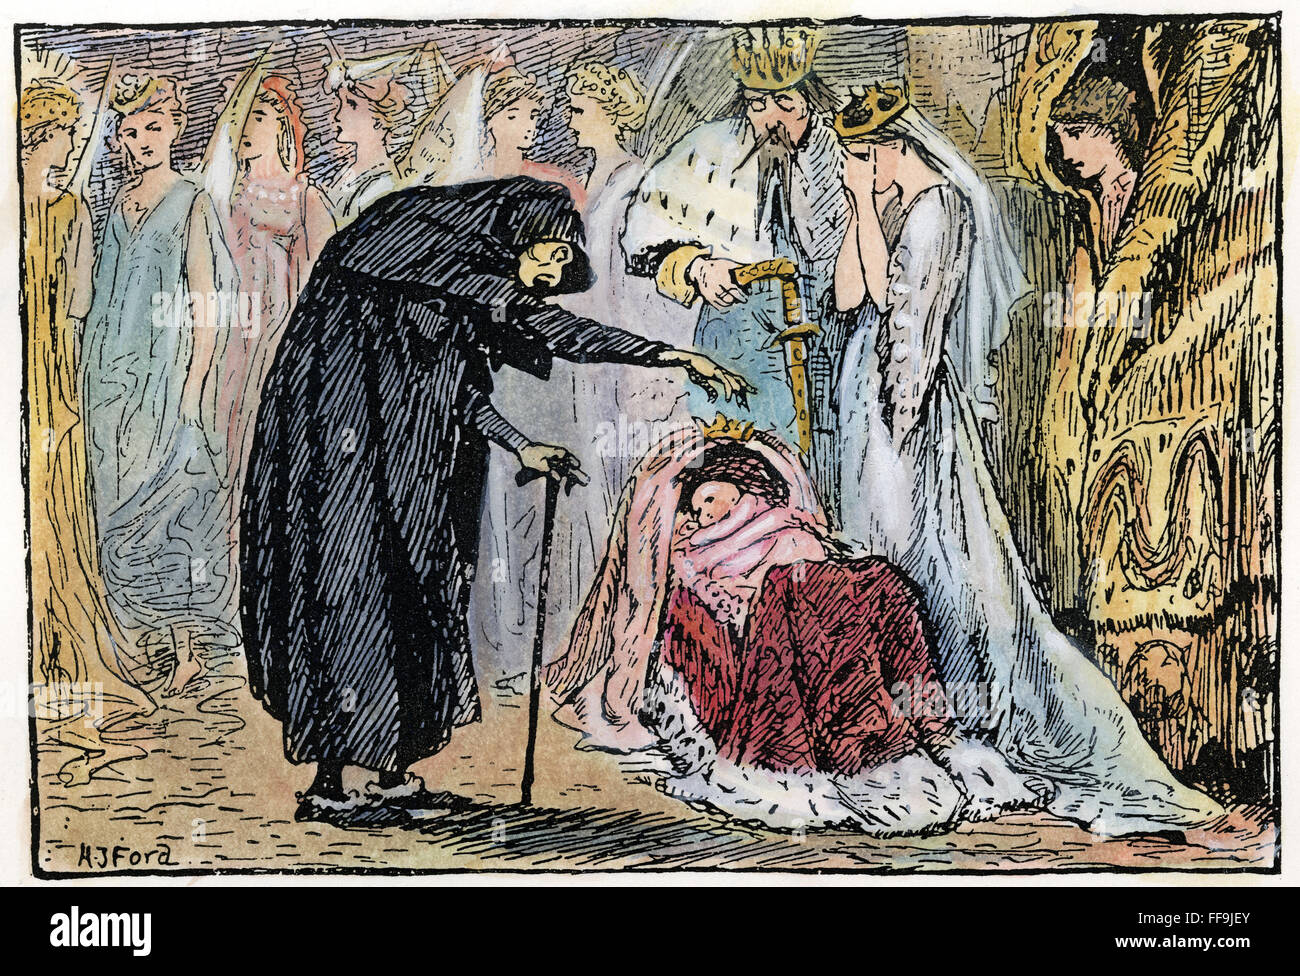 PERRAULT : Sleeping Beauty. /Nla vieille crone jette un sort à la princesse de bébé. Dessin, c1891, par le juge Henry Ford pour le conte de Perrault. Banque D'Images